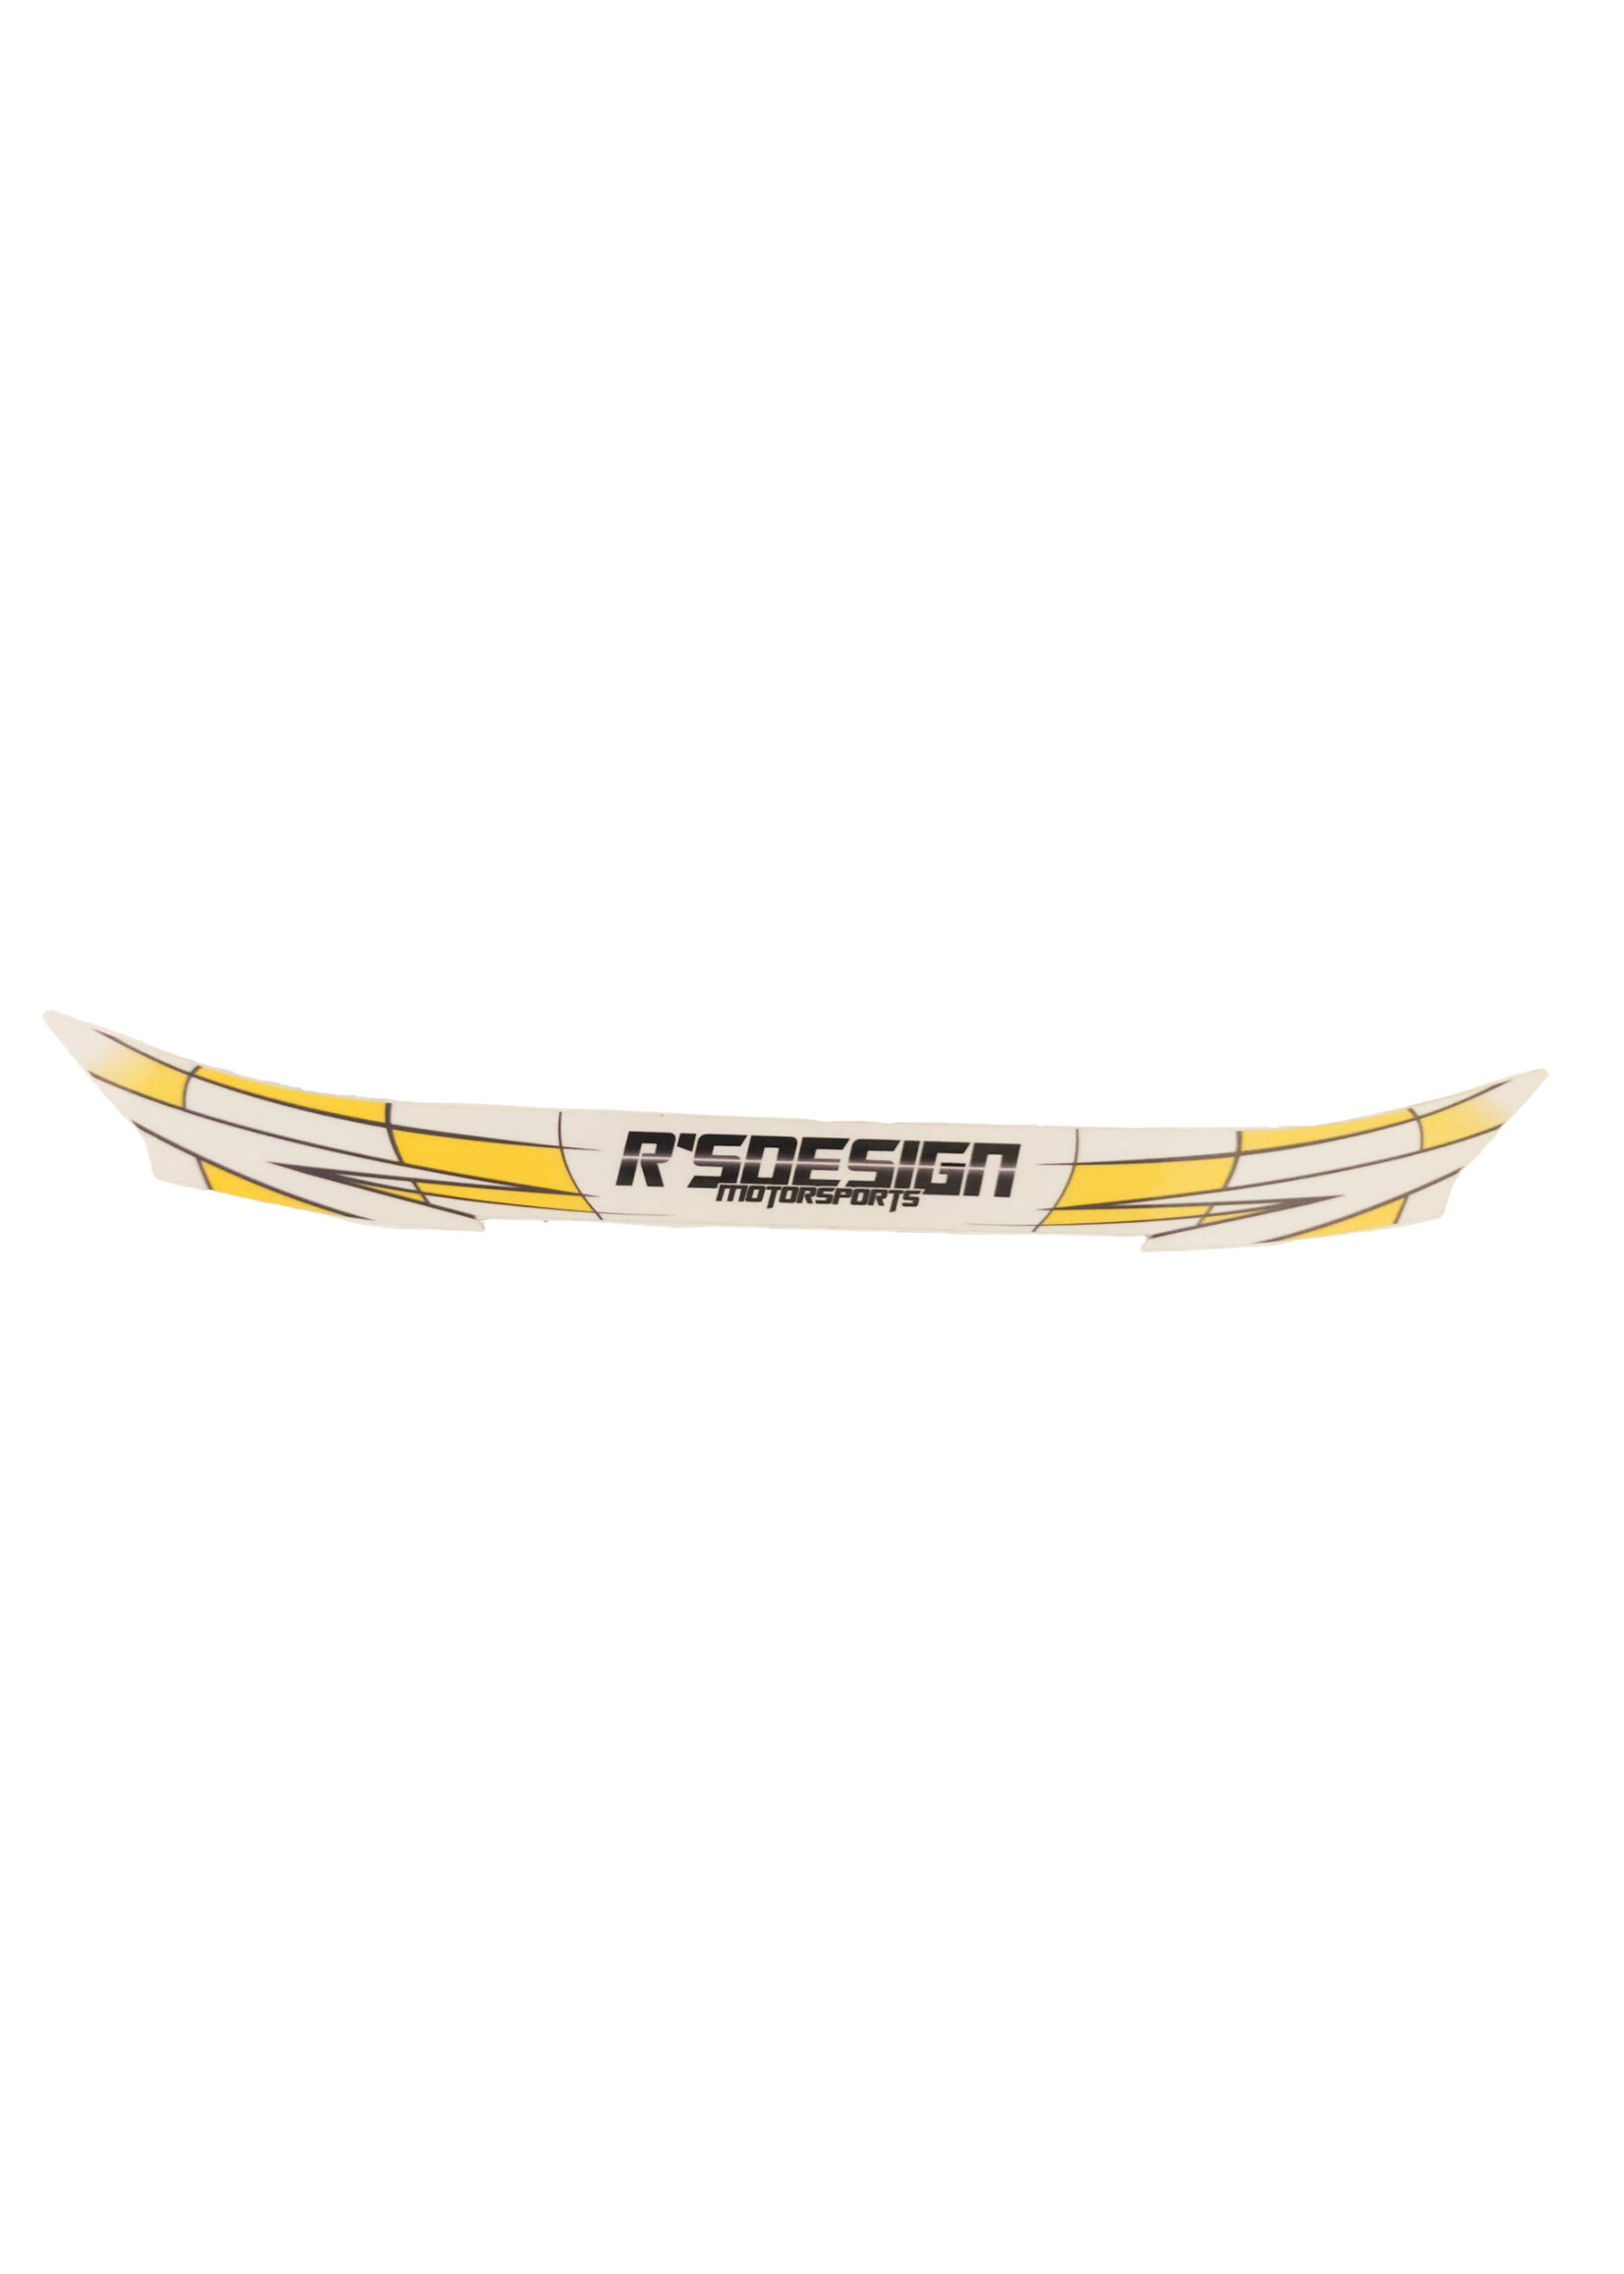 rs design visor sticker RS-Design Motorsports